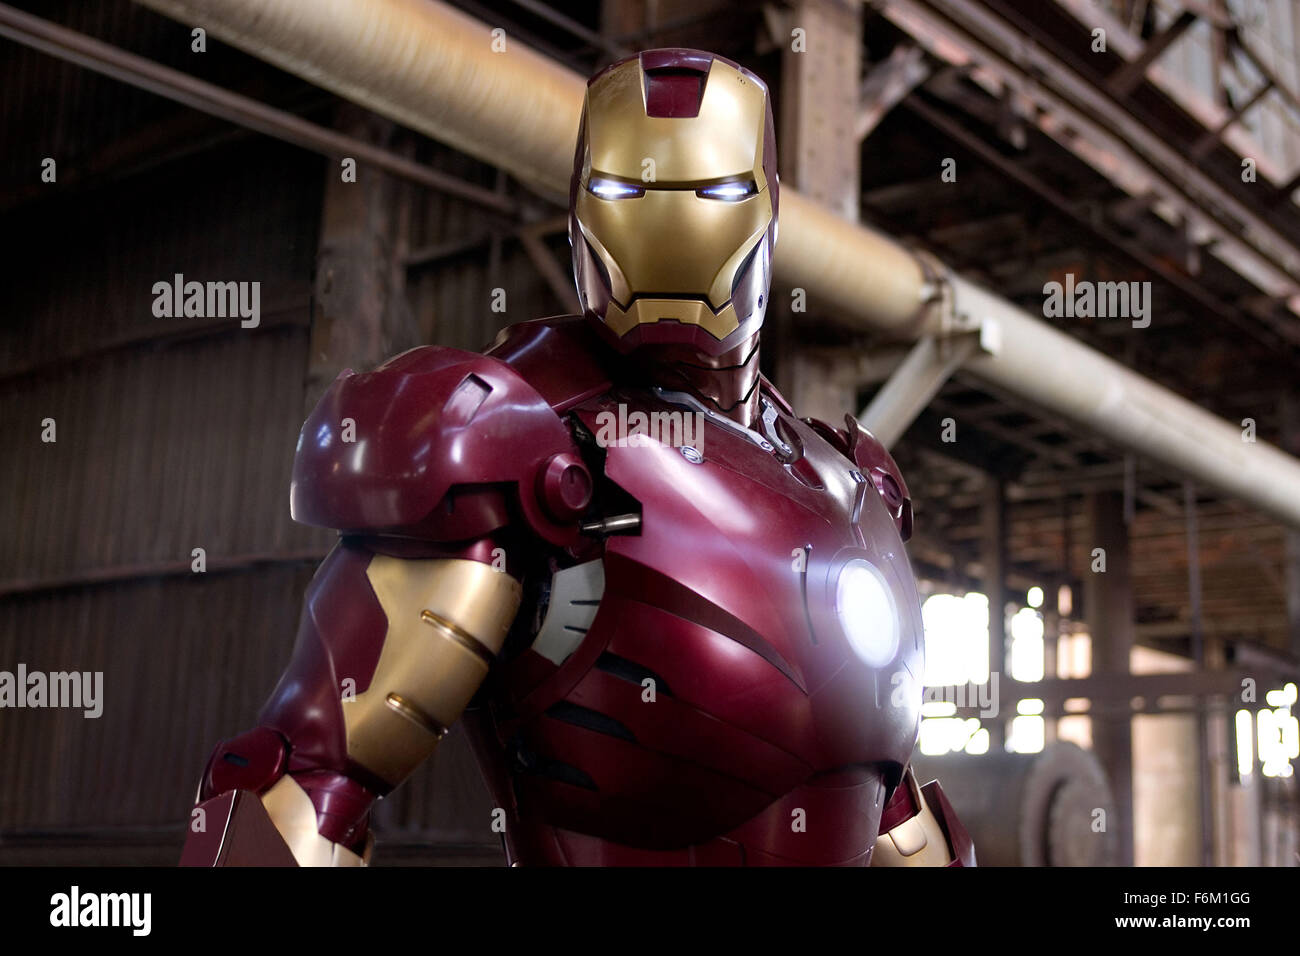 Datum der Freigabe: 2. Mai 2008. FILMTITEL: Iron Man STUDIO: Paramount. PLOT: Als Tony Stark gezwungen ist, erstelle ich einen Leben Unterstützung Anzug um ihn zu halten nach einem Unfall lebendig er beschließt, die Technologie in seinem Anzug zu verwenden, um Verbrechen zu bekämpfen. Bild: ROBERT DOWNEY JR. Sternen als industrieller Milliardär Tony Stark Alias Iron Man. Stockfoto